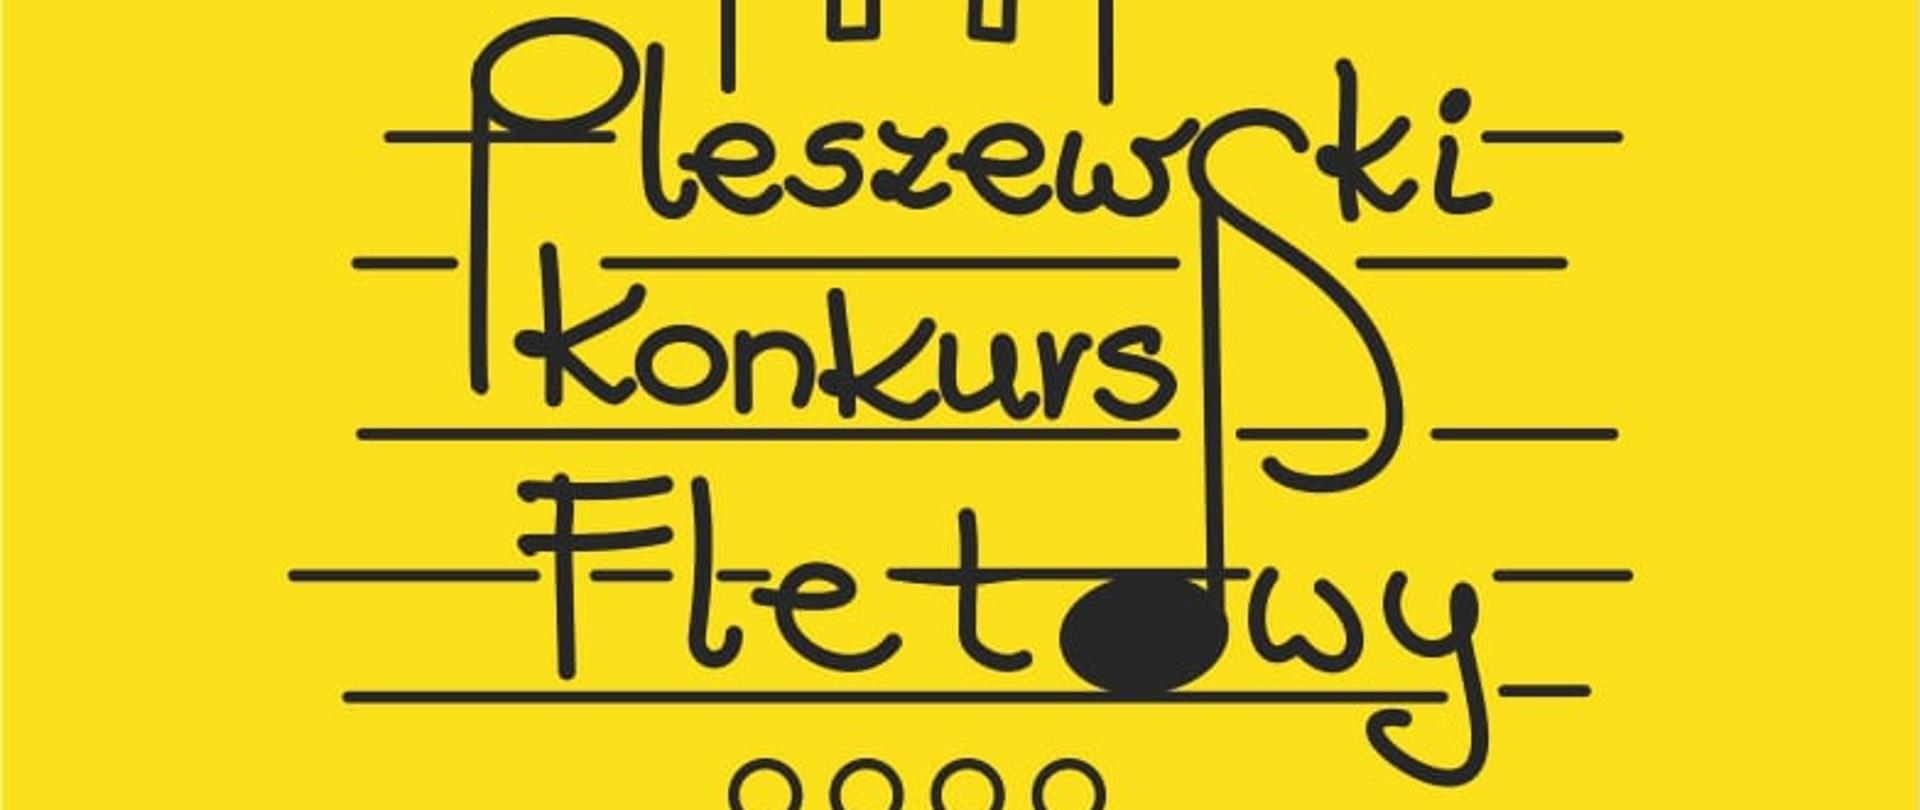 Grafika w kolorze żółtym. Na niej czarny napis odręczny "Pleszewski Konkurs Fletowy", który znajduje się na pięciolini. 